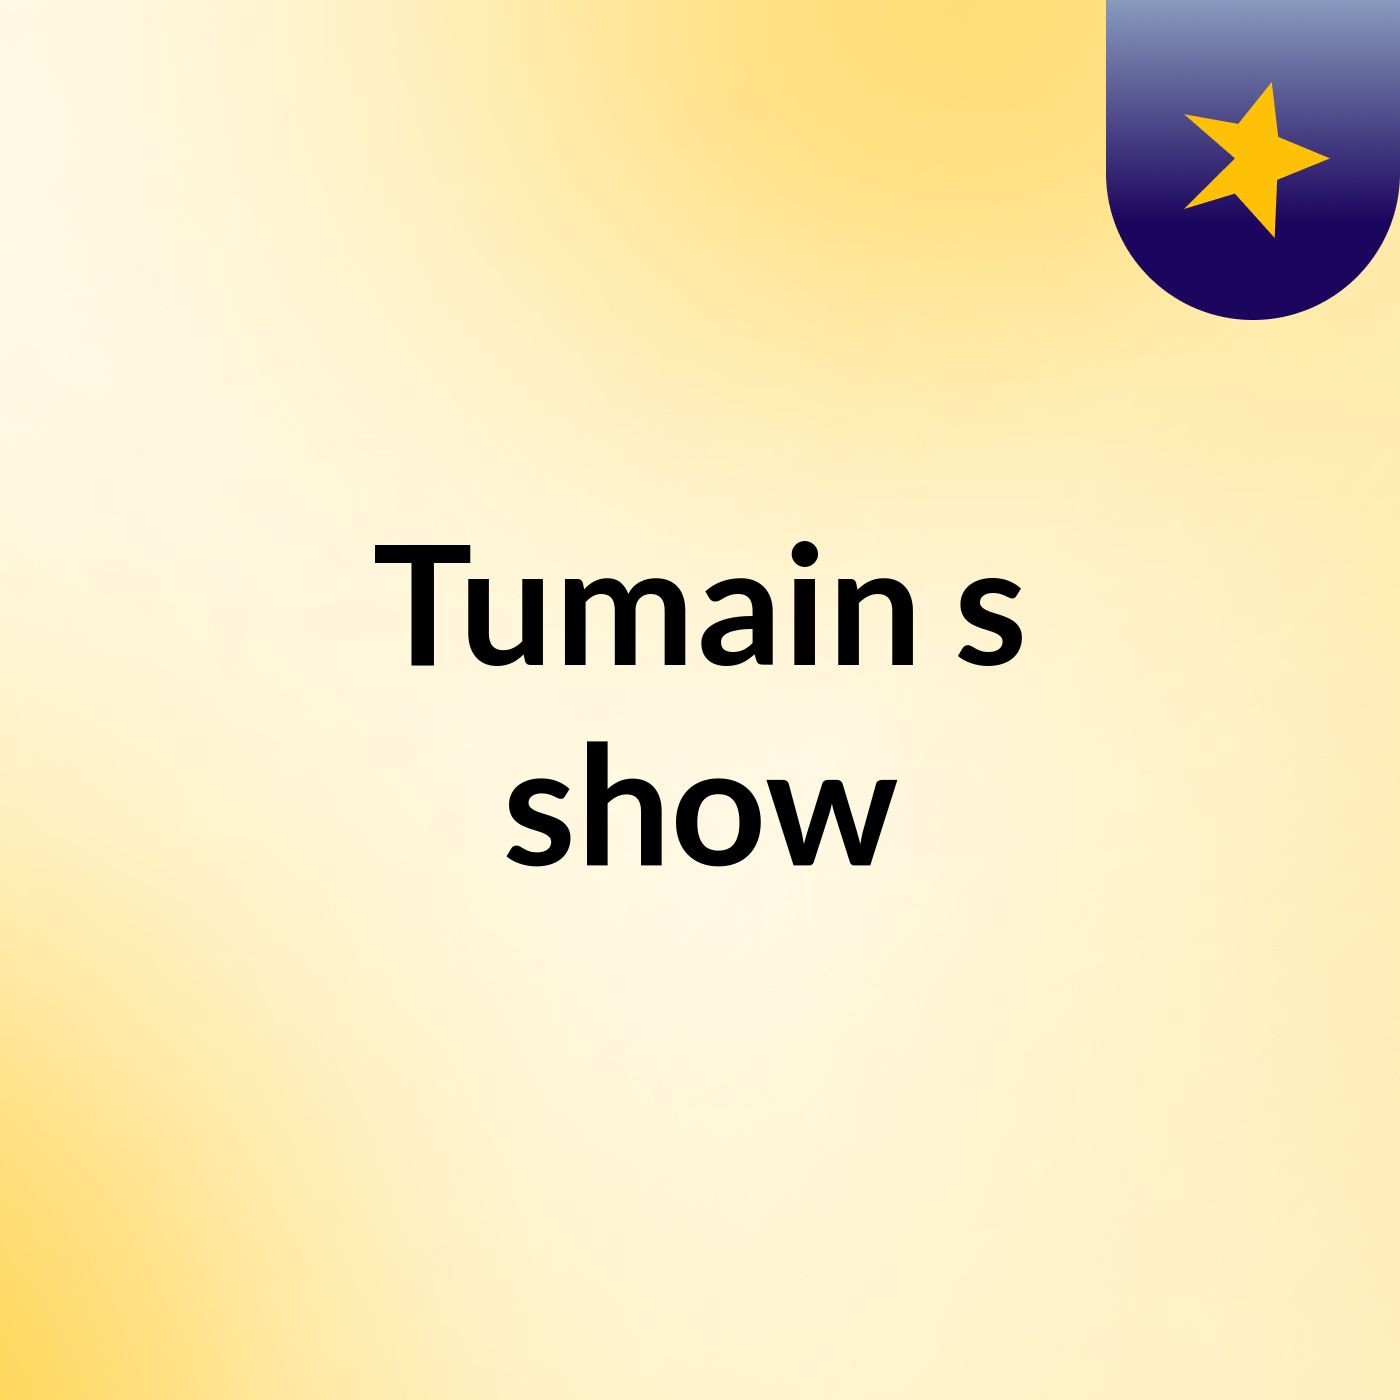 Tumain's show